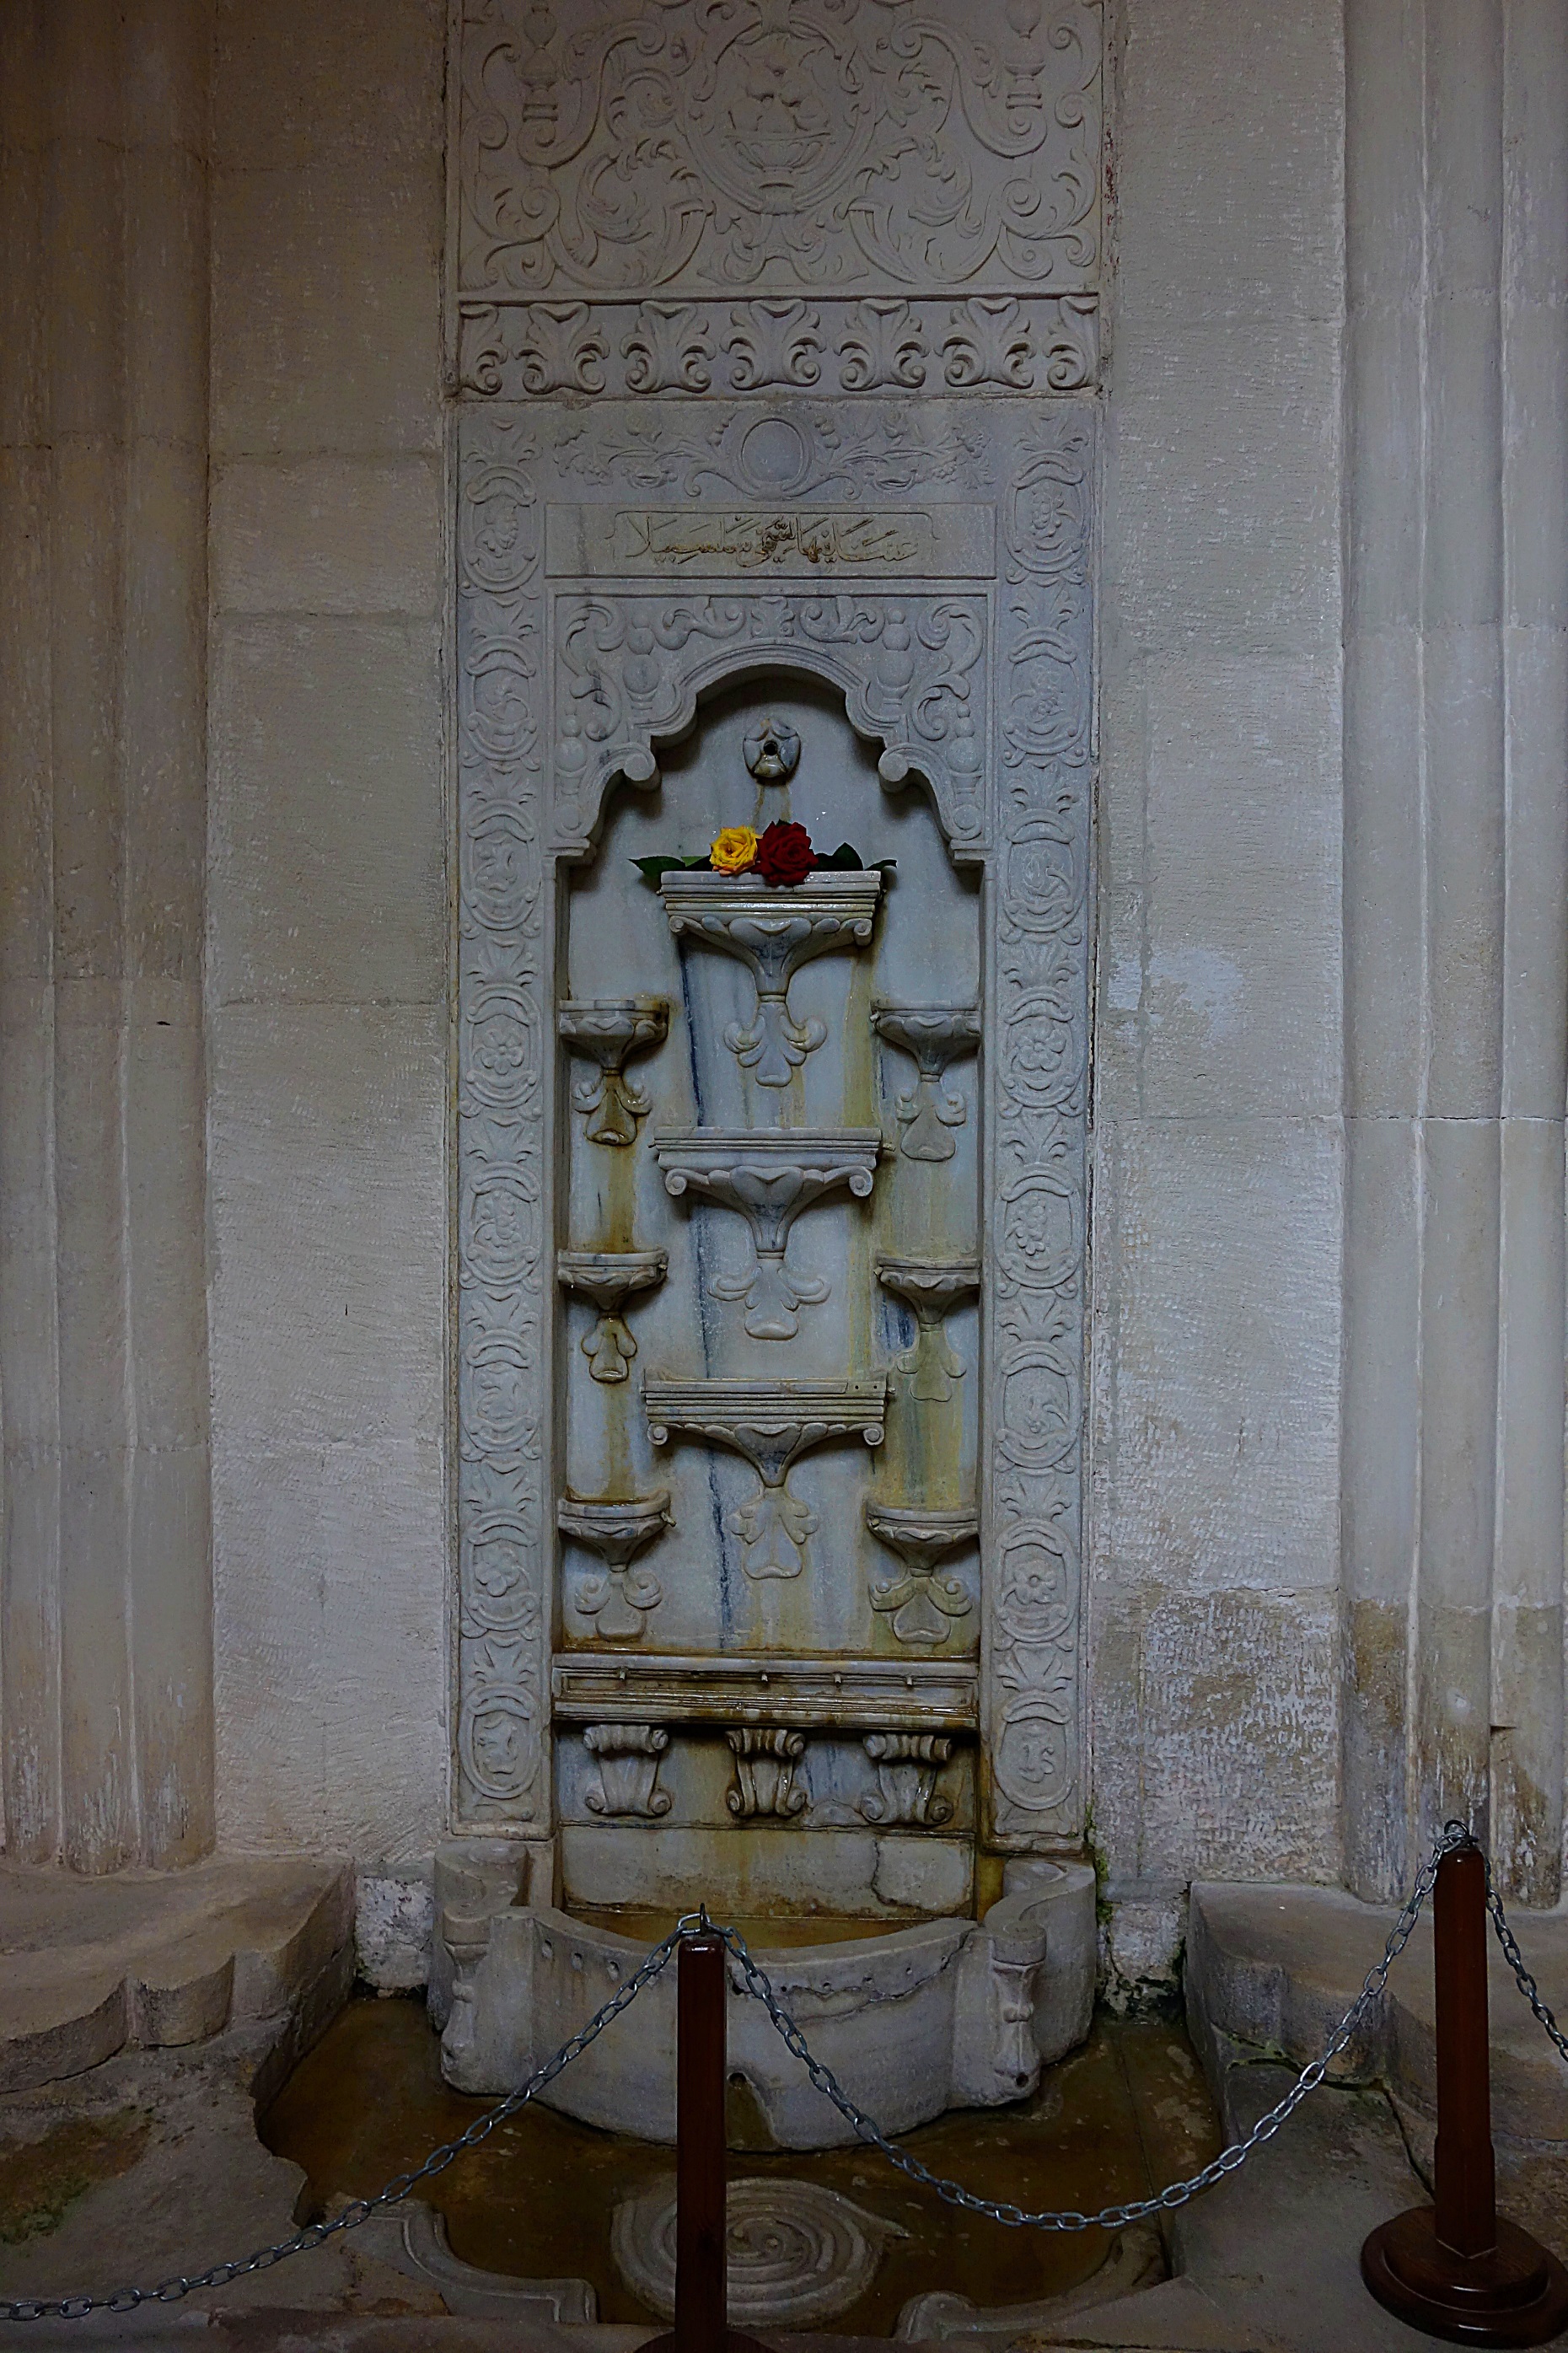 Знаменитый Фонтан слёз (Бахчисарайский фонтан) в Ханском дворце. Фото Морошкина В.В.